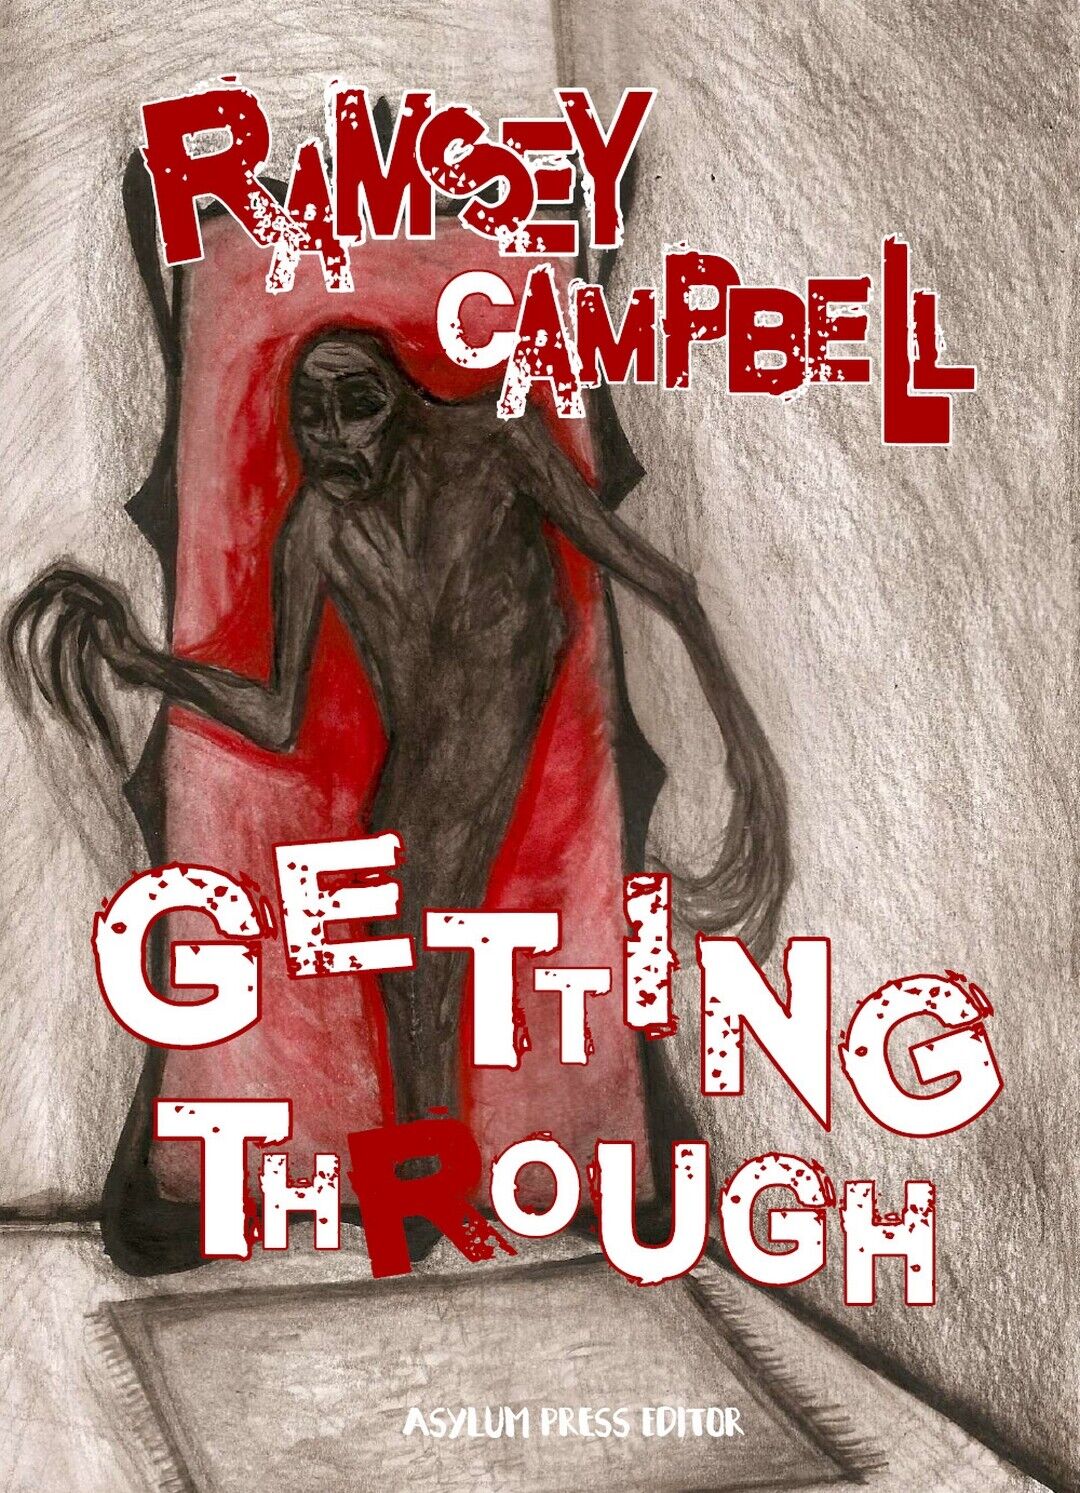 Getting through  di Ramsey Campbell,  2019,  Asylum Press Editor libro usato